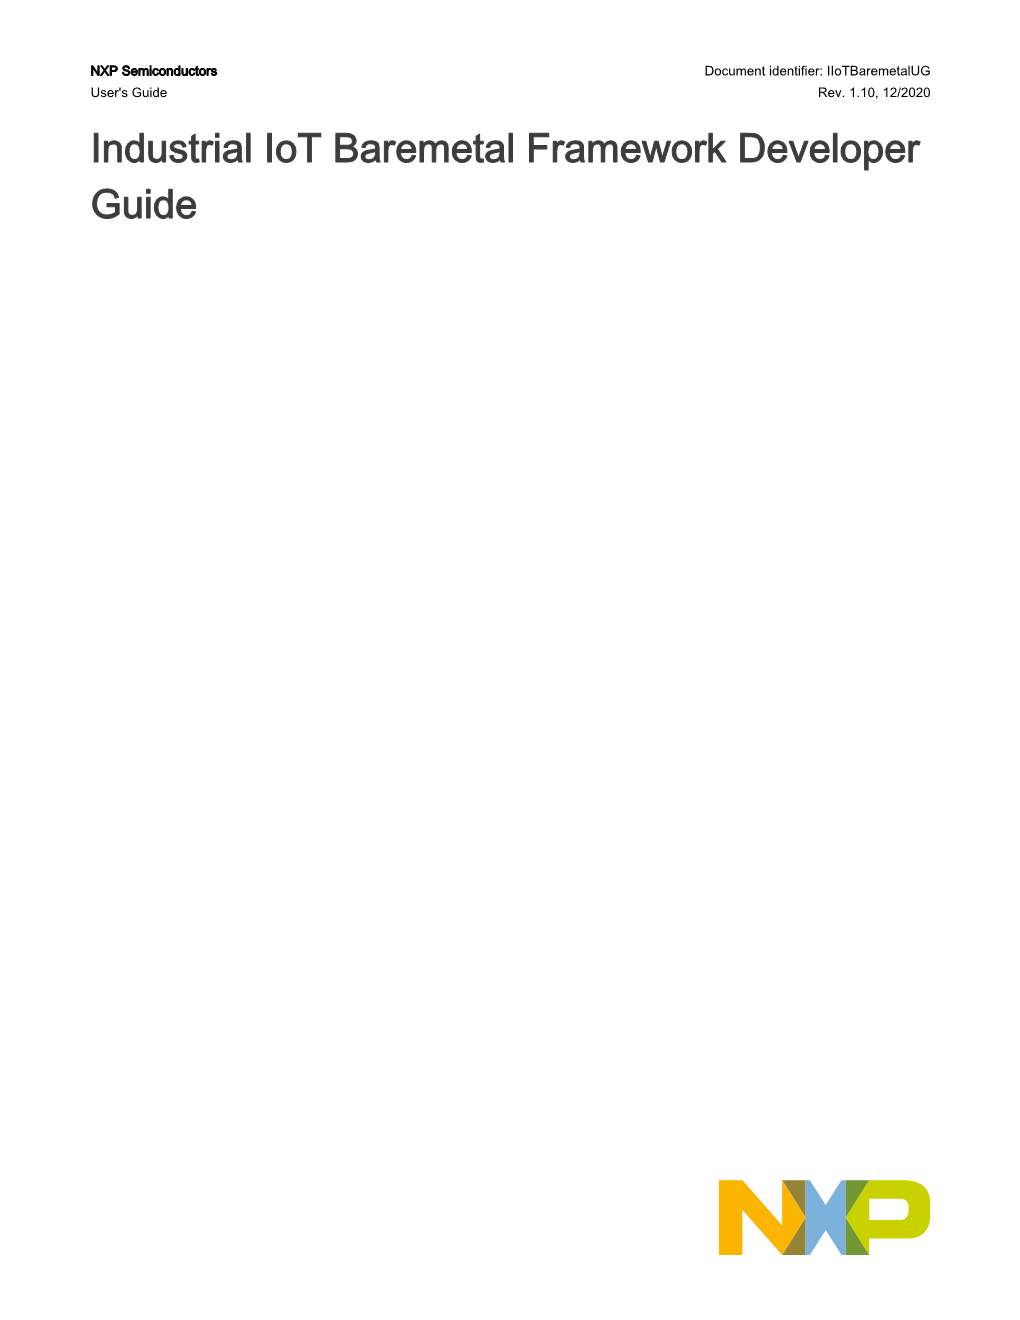 Industrial Iot Baremetal Framework Developer Guide Rev1.10